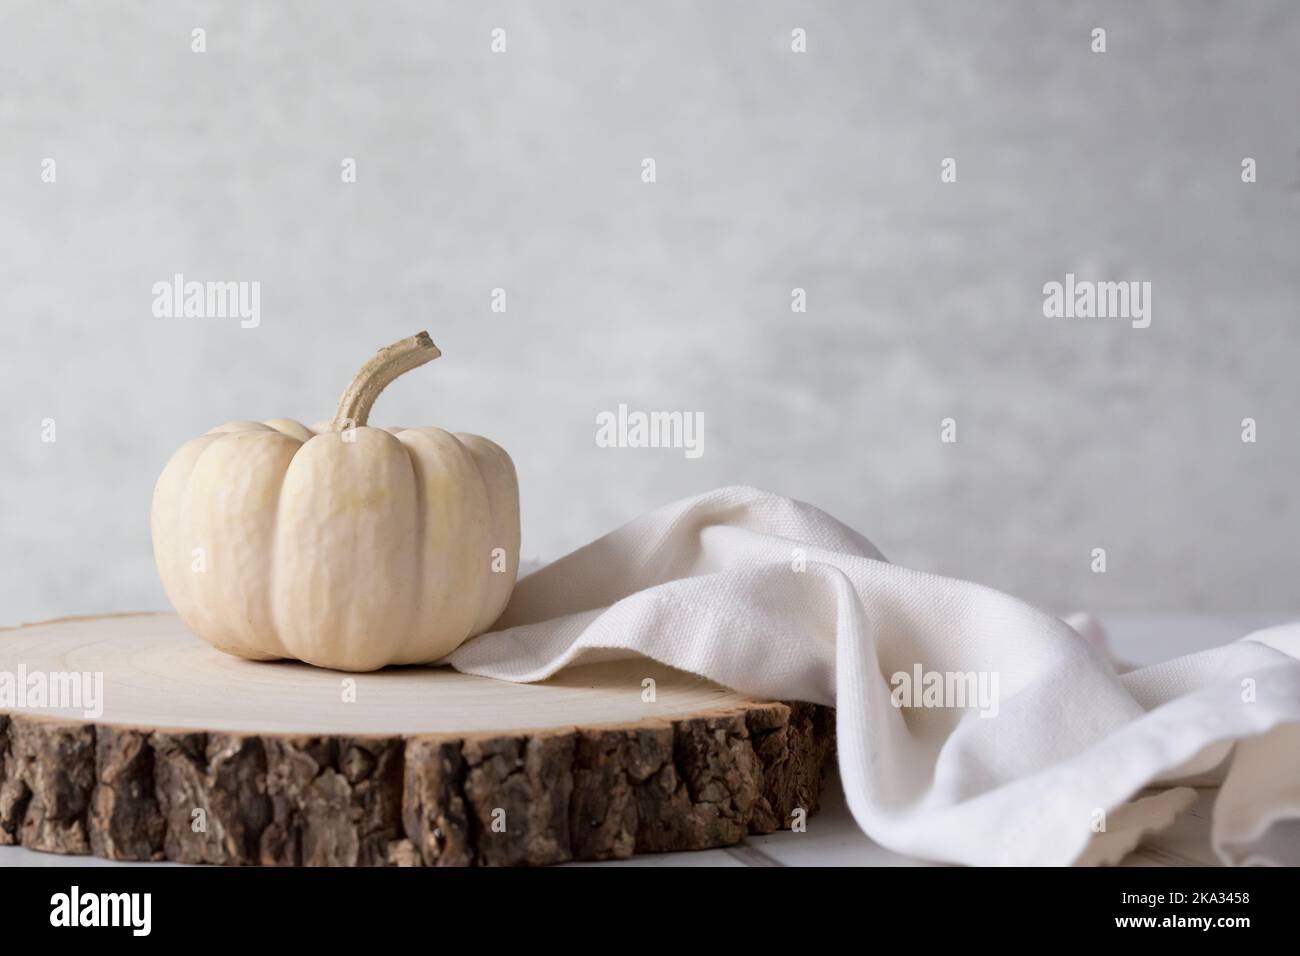 Citrouille bébé Boo Ghost sur bloc de bois avec serviette en lin crème sur un fond clair. Nature morte nette, légère et aérée. Espace pour la copie Banque D'Images